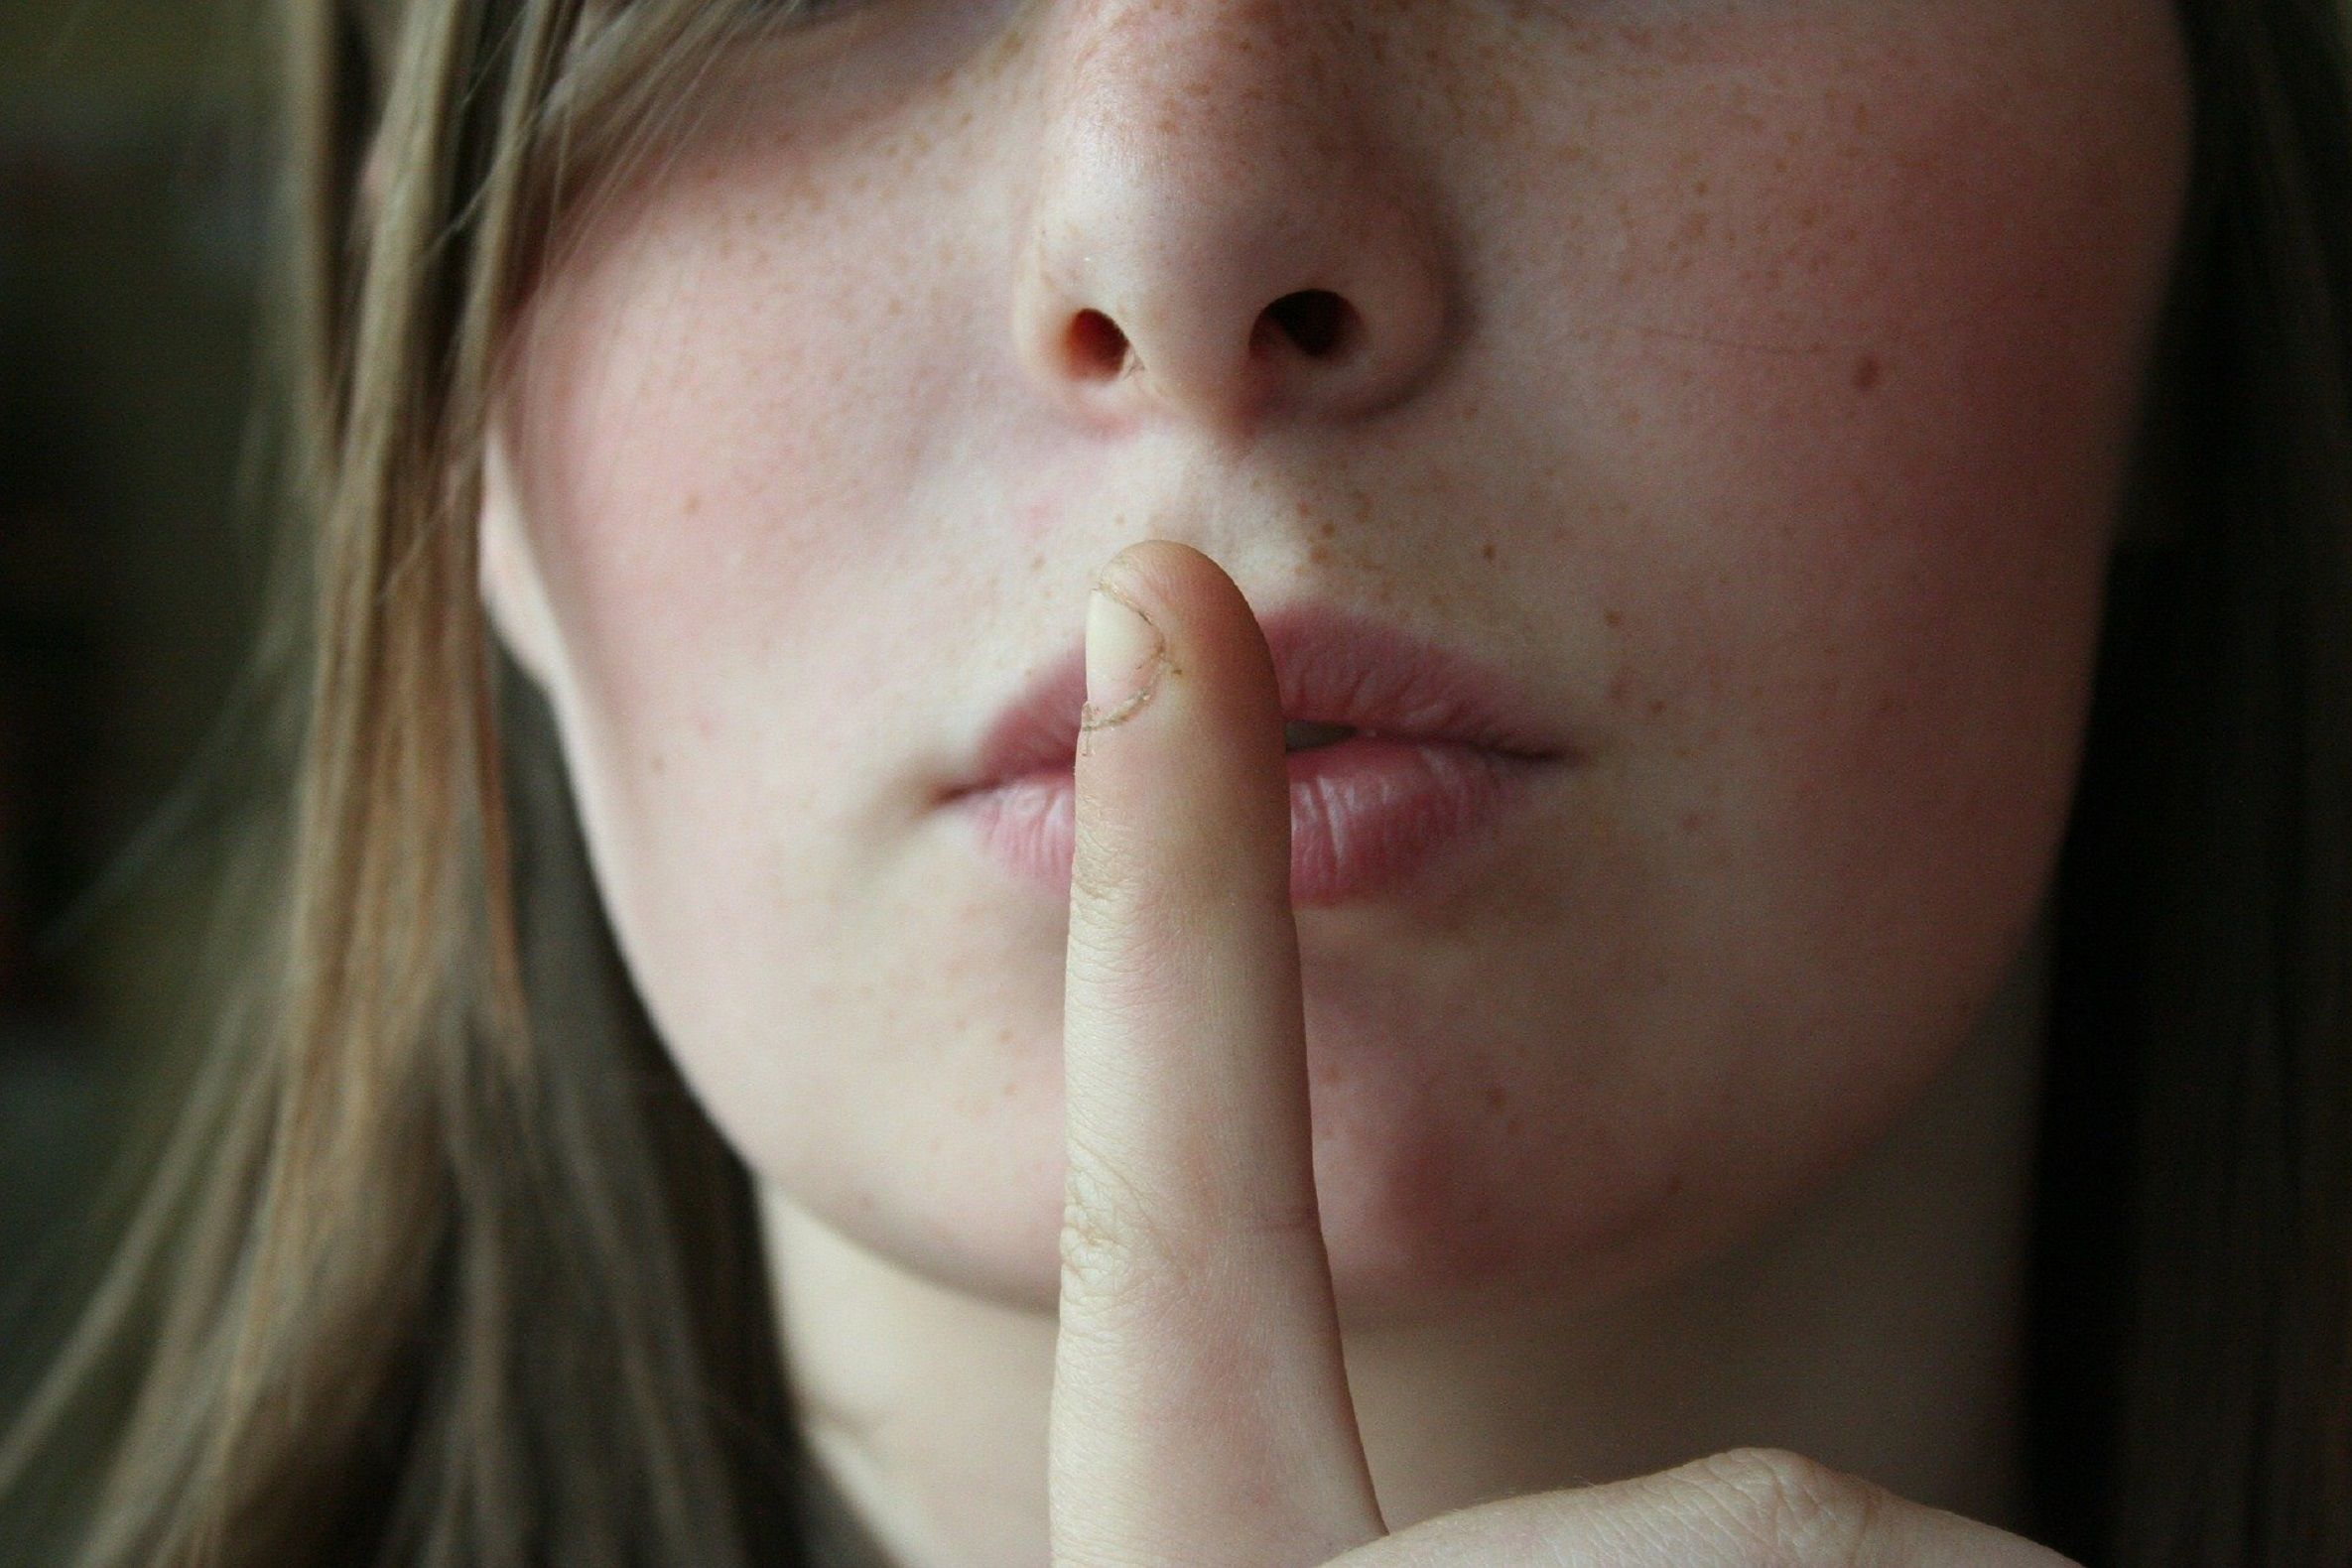 Silencio abuso sexual menor / Pixabay